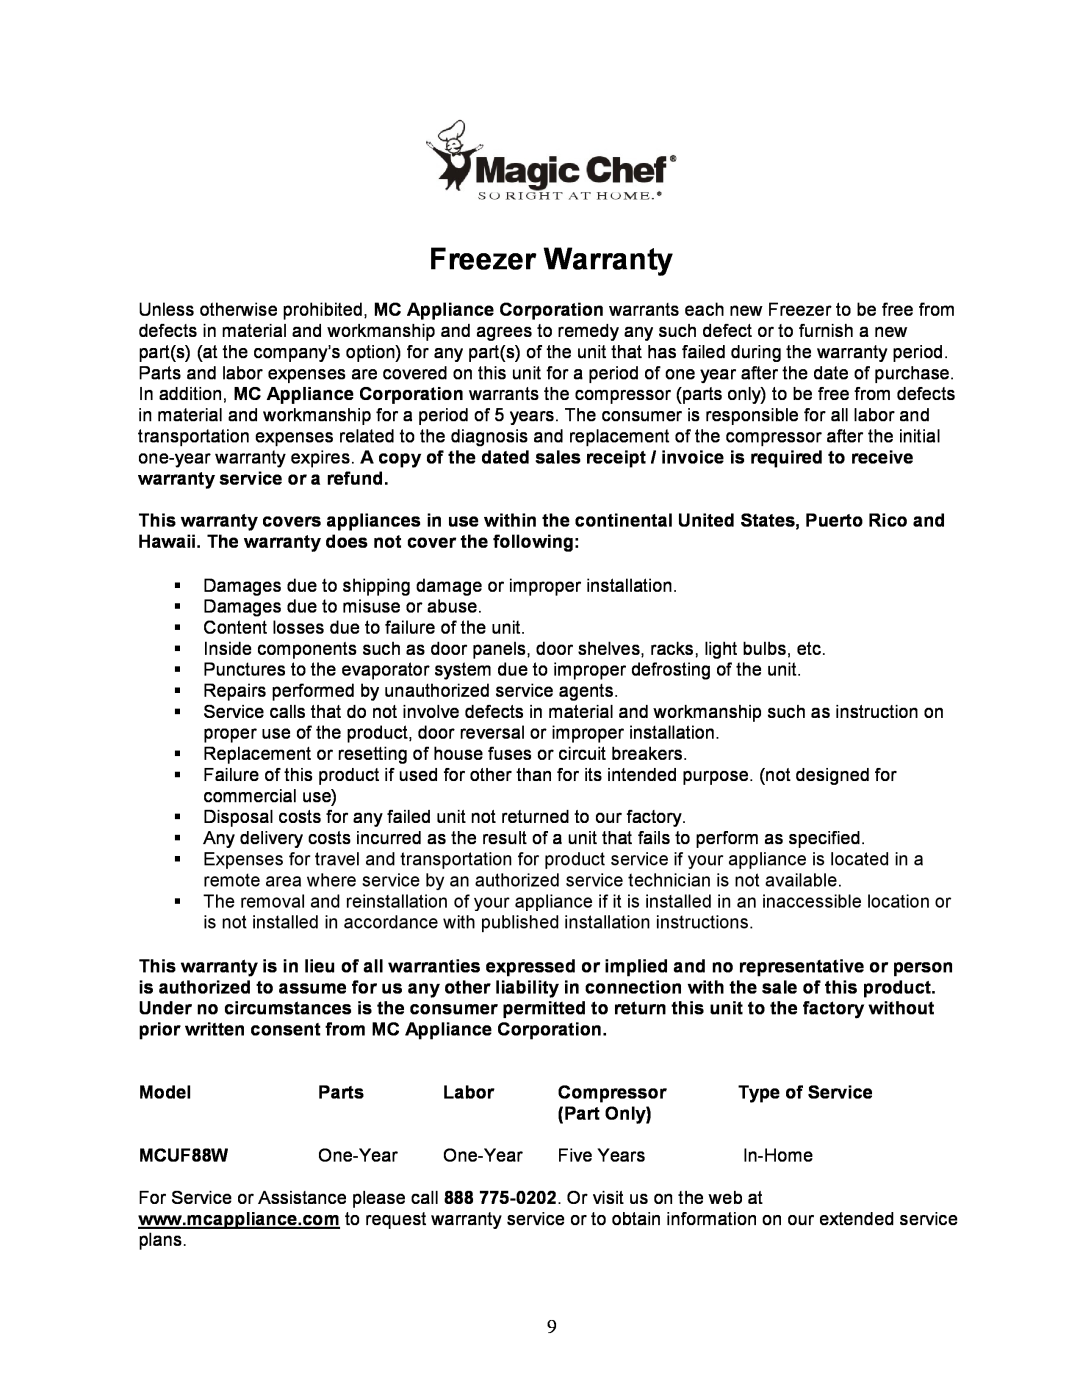 Magic Chef MCUF88W instruction manual Freezer Warranty 